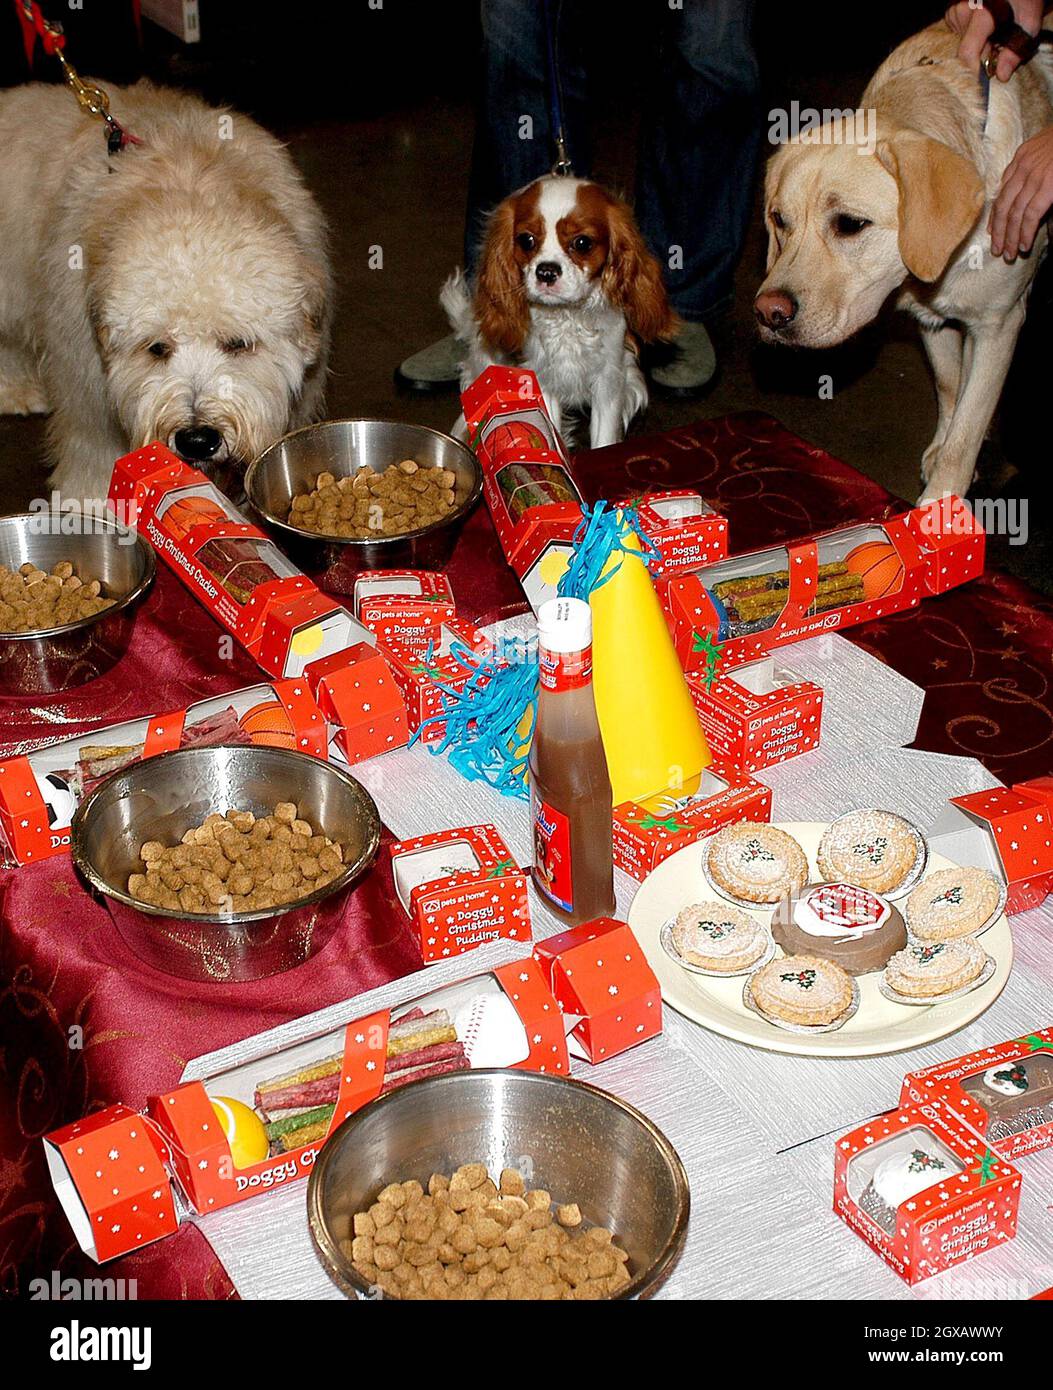 La primera cena de Navidad para perros del Reino Unido se estrena hoy, 26  de noviembre, en la tienda de animales domésticos en casa de Raynes Park  Pets at Home, en el